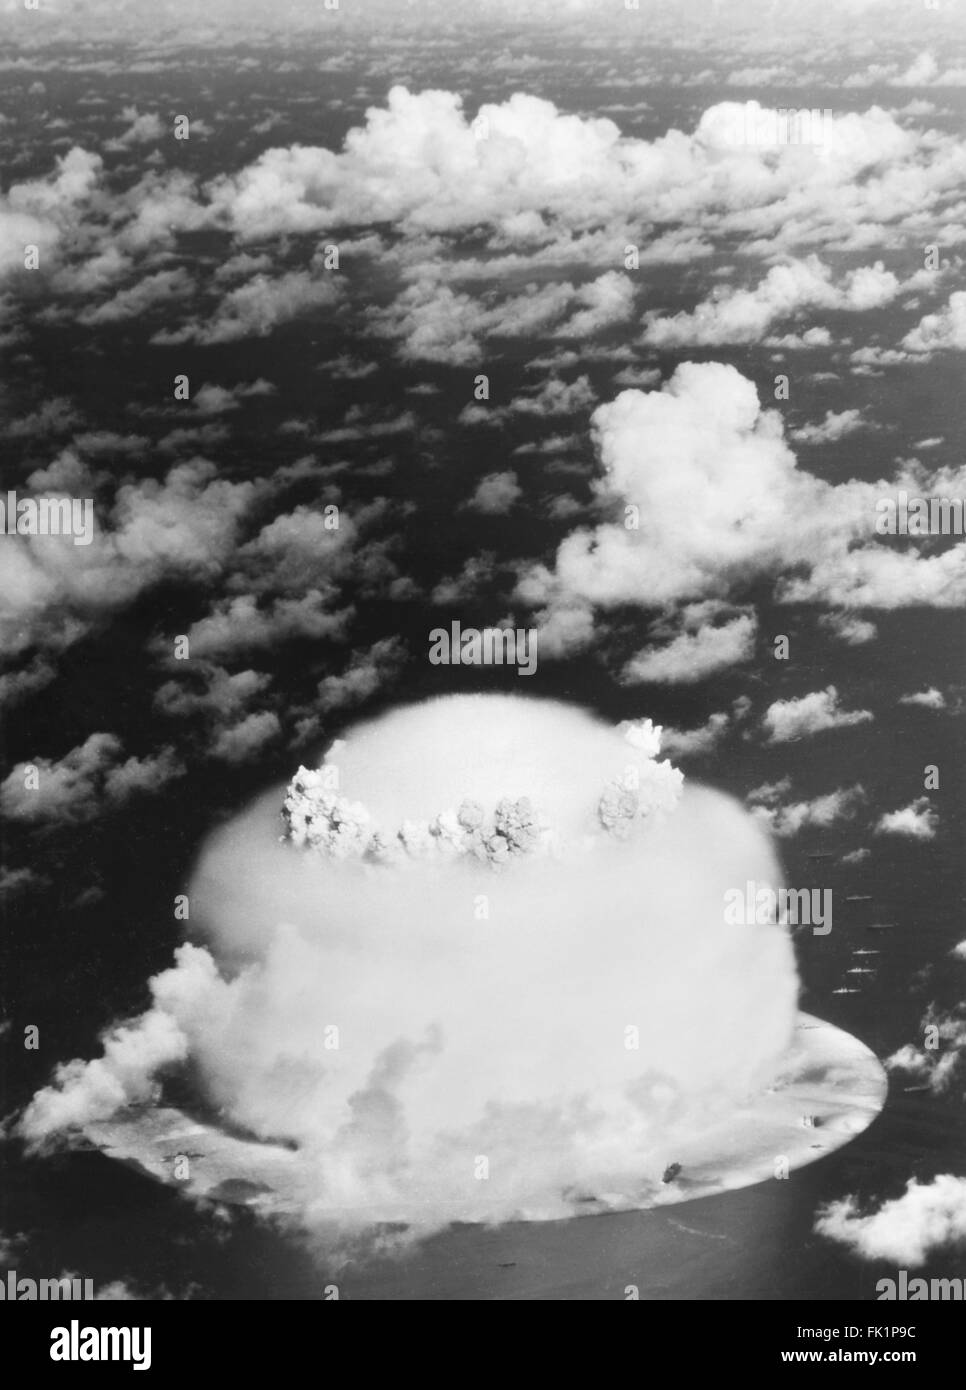 Champignon atomique de l'opération Crossroads les essais d'armes à l'atoll de Bikini, dans les Îles Marshall, l'océan Pacifique en juillet/août 1946. Banque D'Images